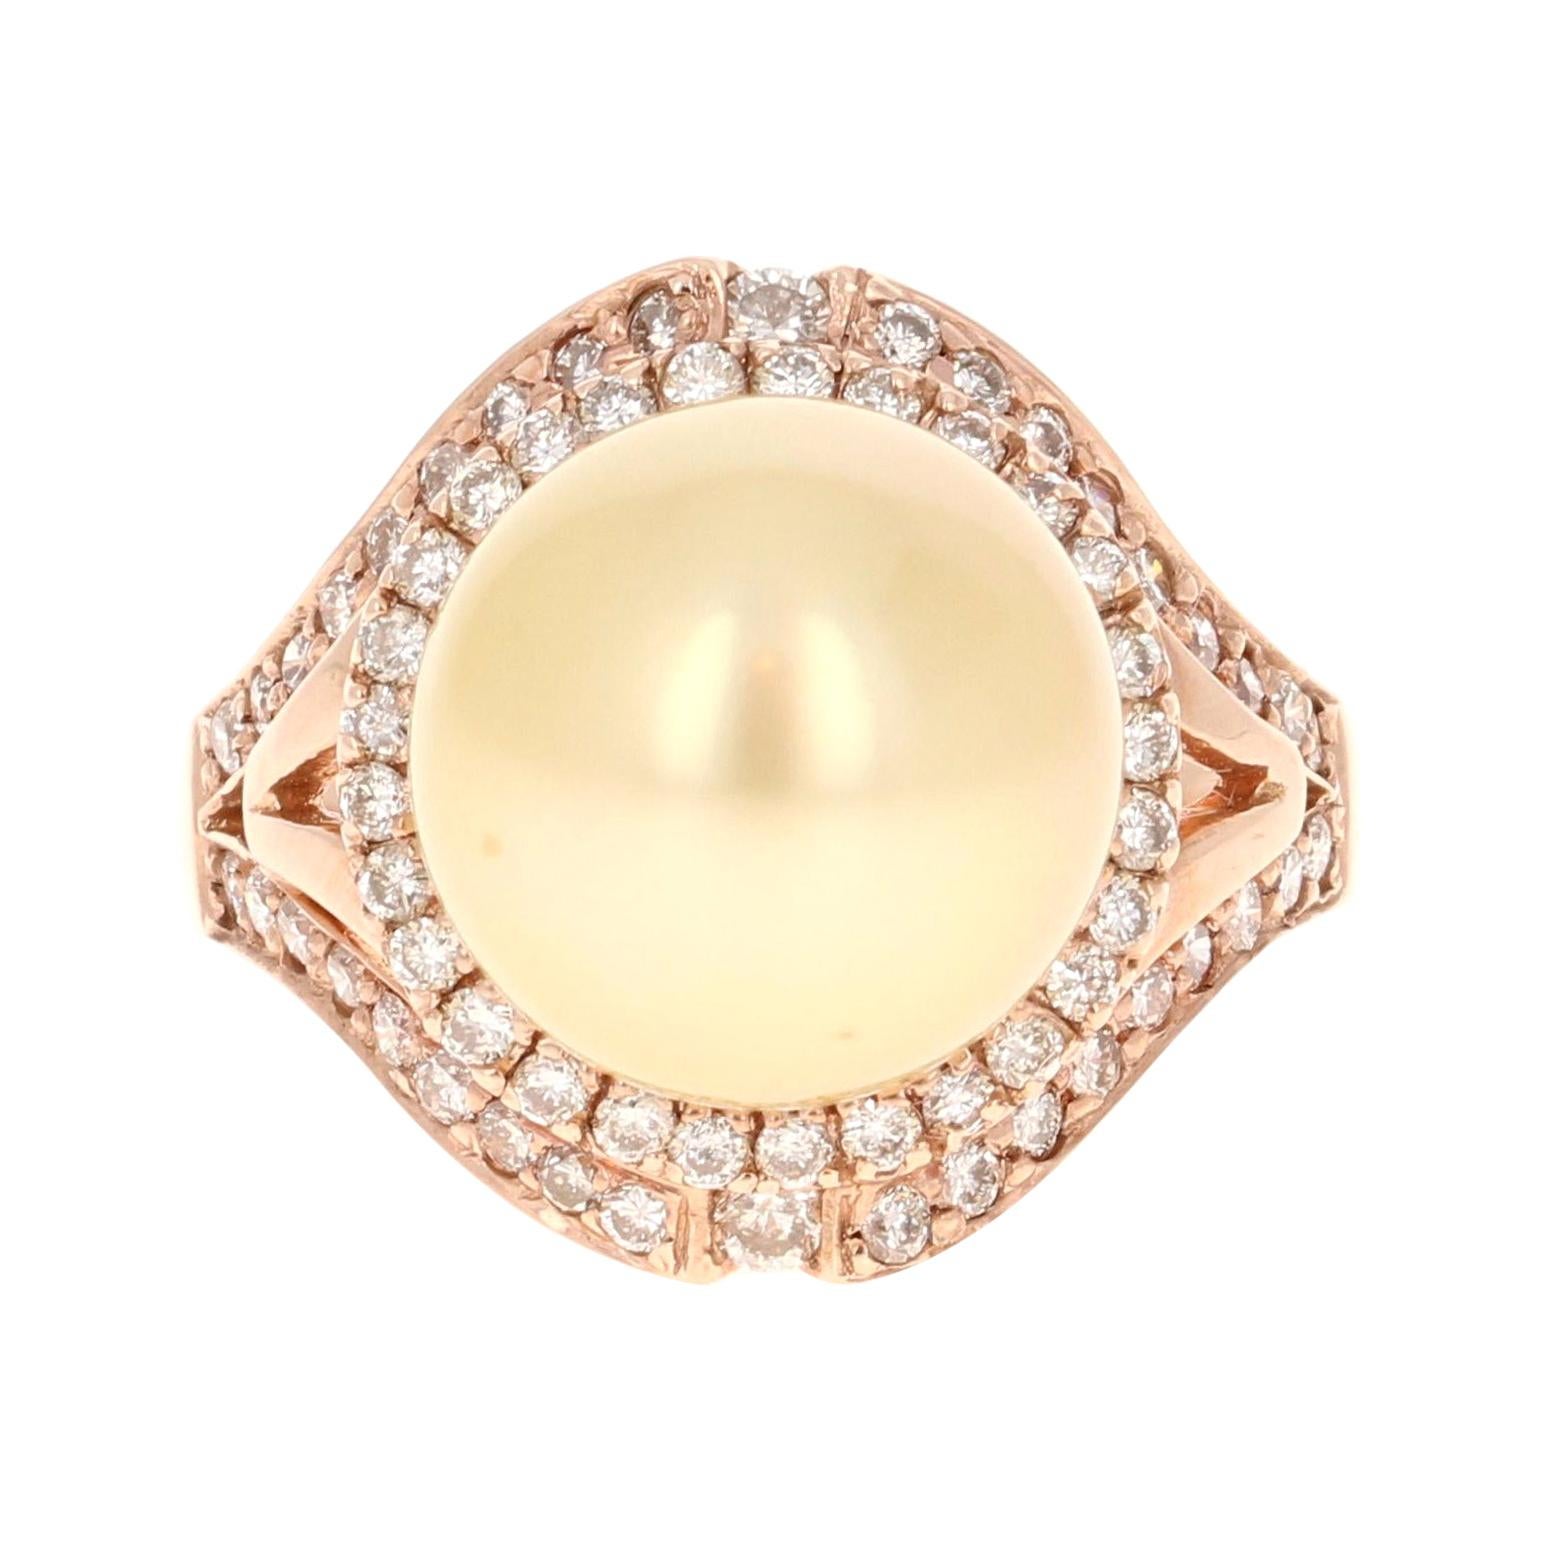 0.69 Carat Diamond South Sea Pearl 14 Karat Rose Gold Ring